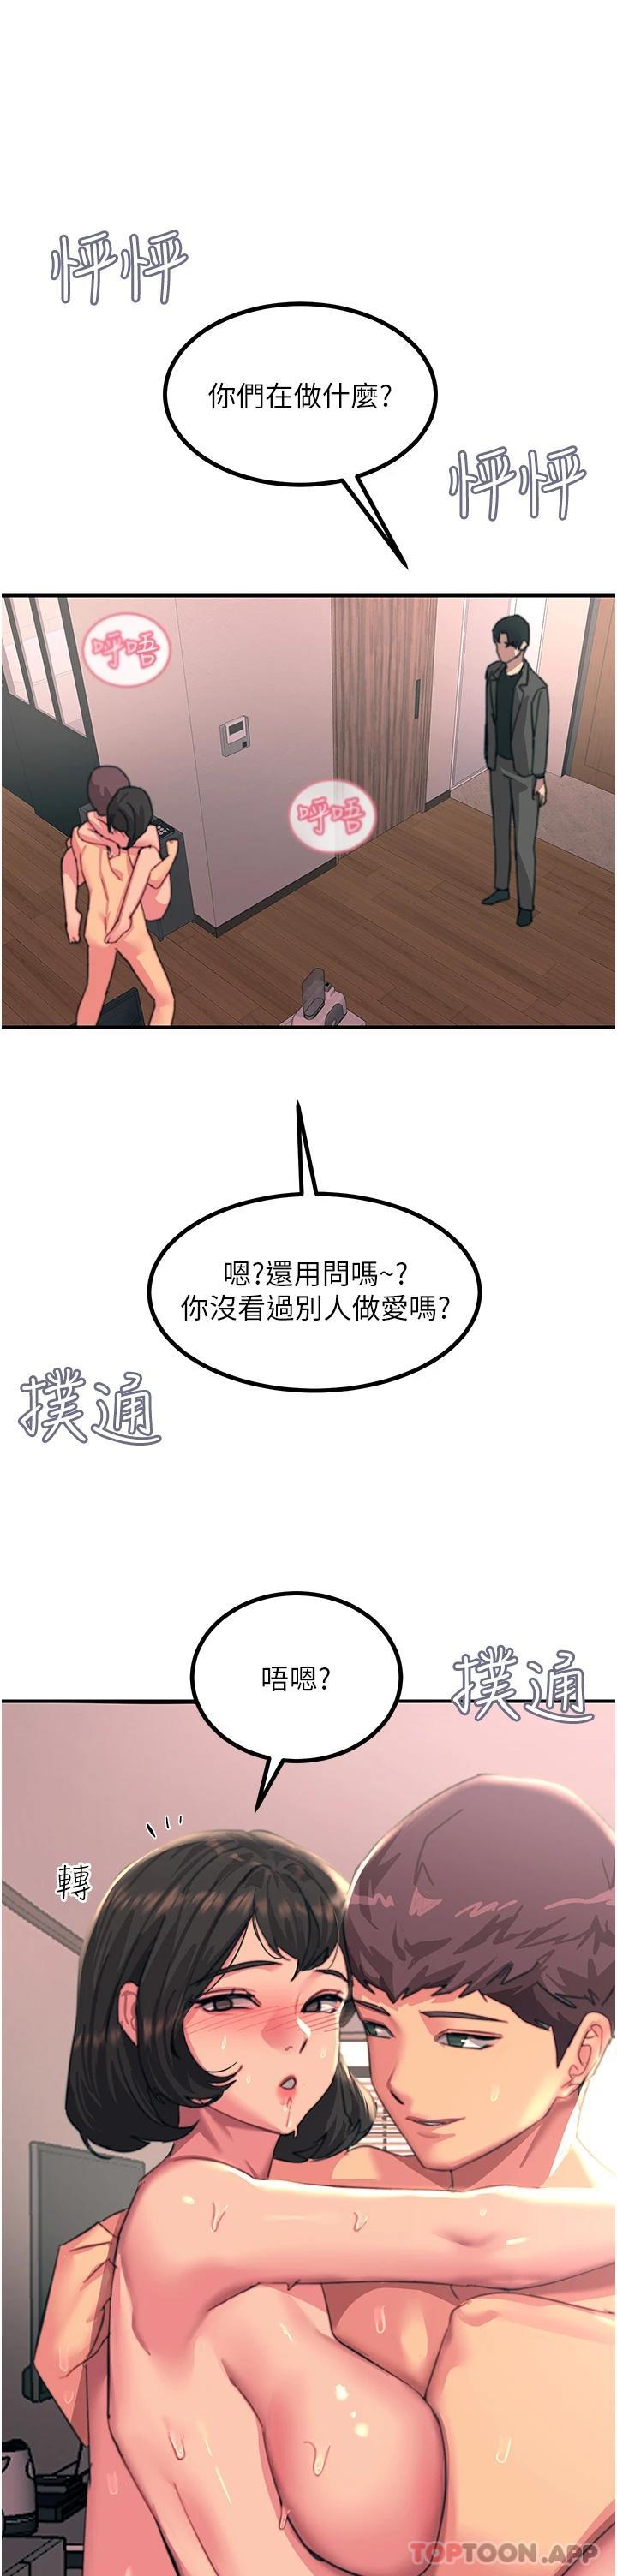 韩国污漫画 觸電大師 第38话-在男友面前狂喷 38